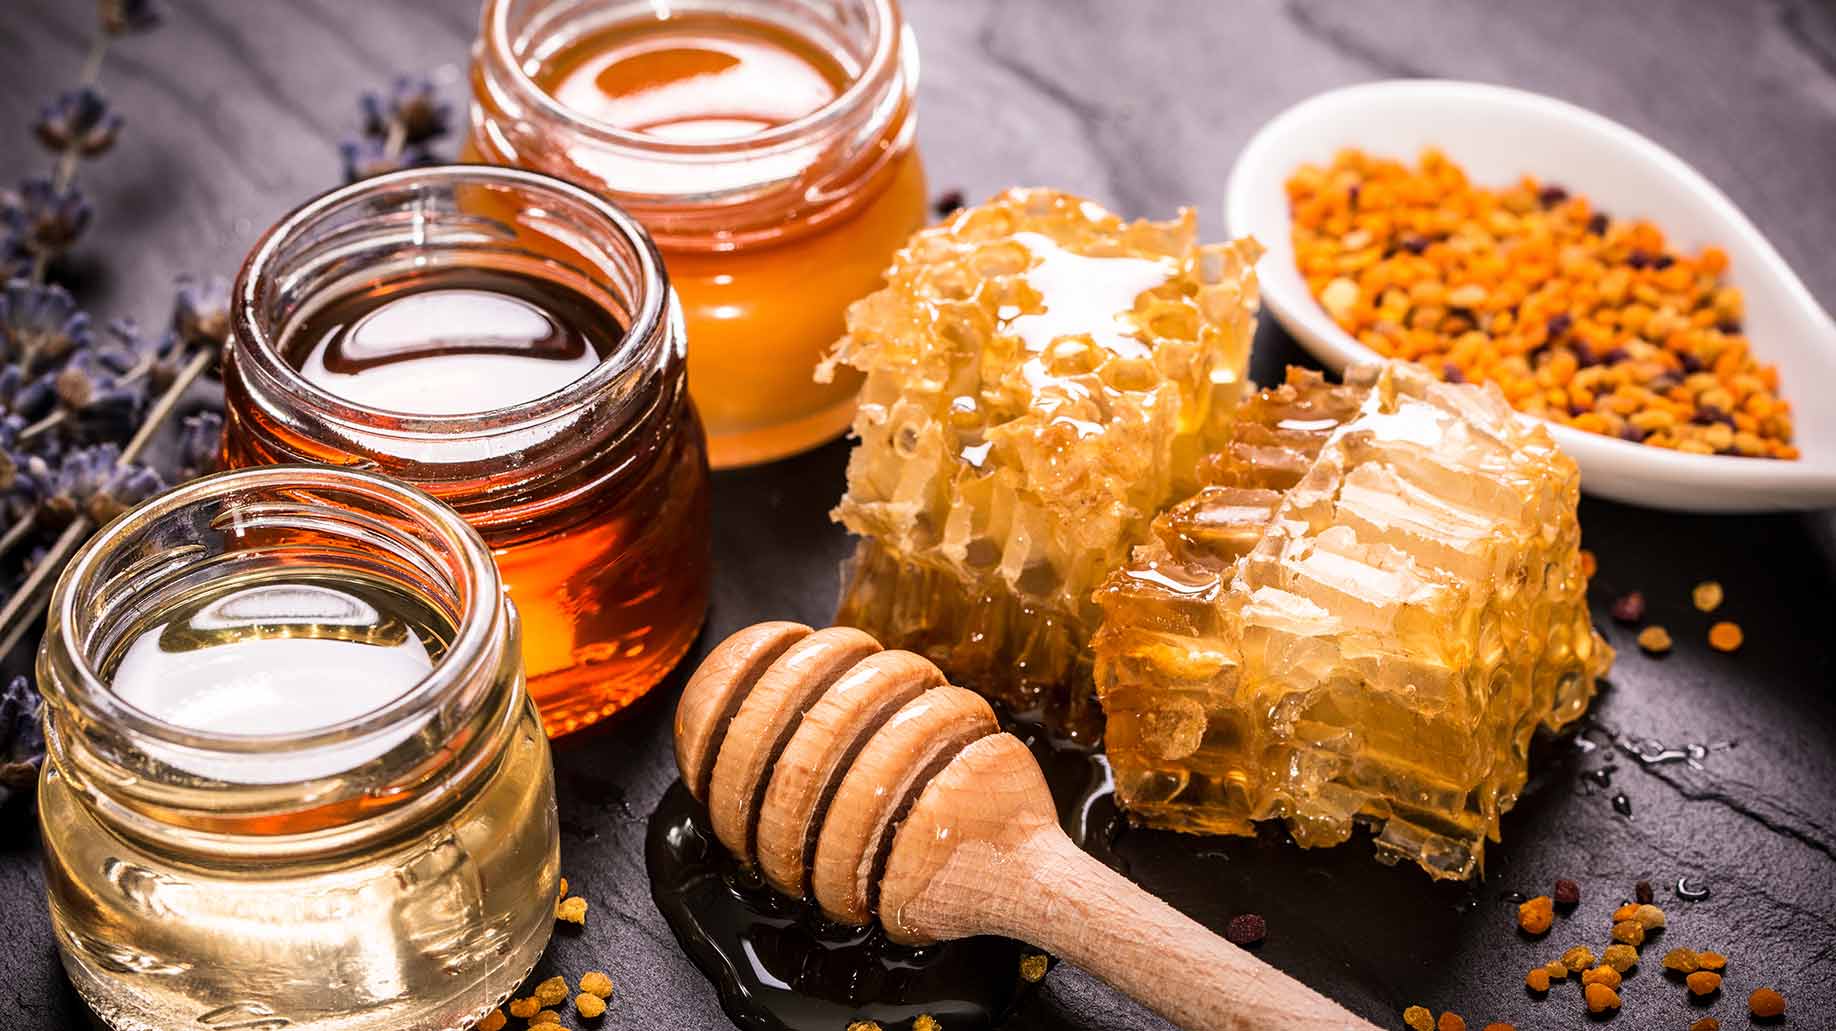 فوائد العسل في المرض والوقاية من الفيروسات وعلاج أمراض الجهاز الهضمي